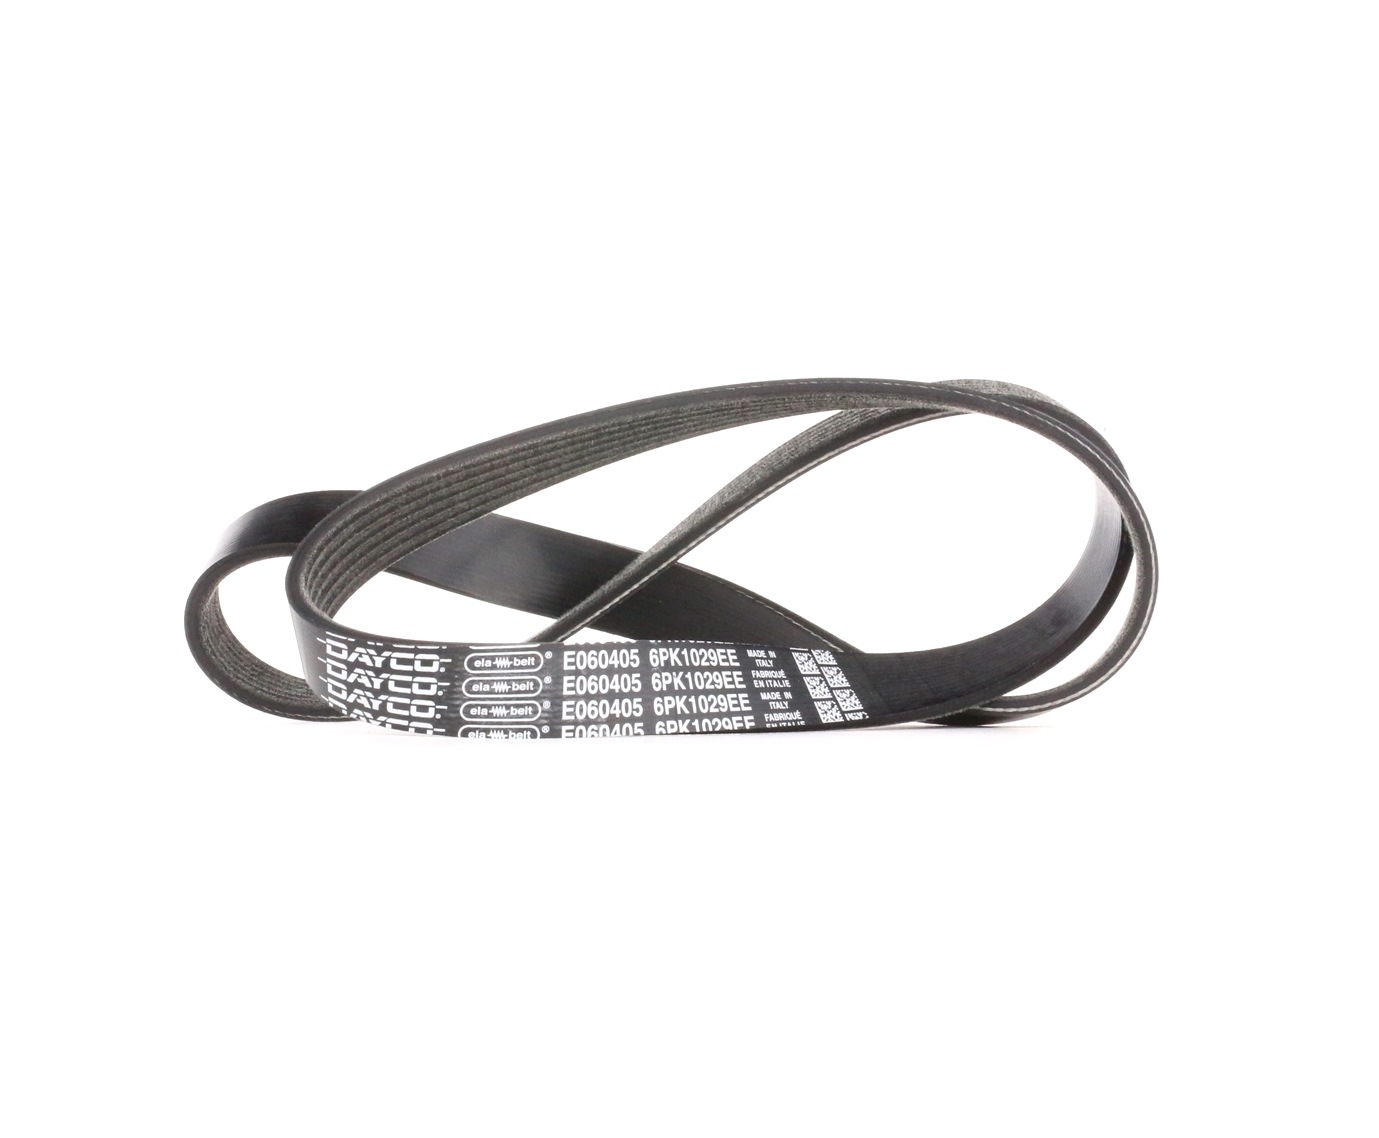 Image of DAYCO V-ribbed belt FORD 6PK1029EE 1740957,1809955,BV2Q6D314AB Serpentine belt,Auxiliary belt,Poly V-belt,Ribbed belt,Multi V-belt,Poly belt